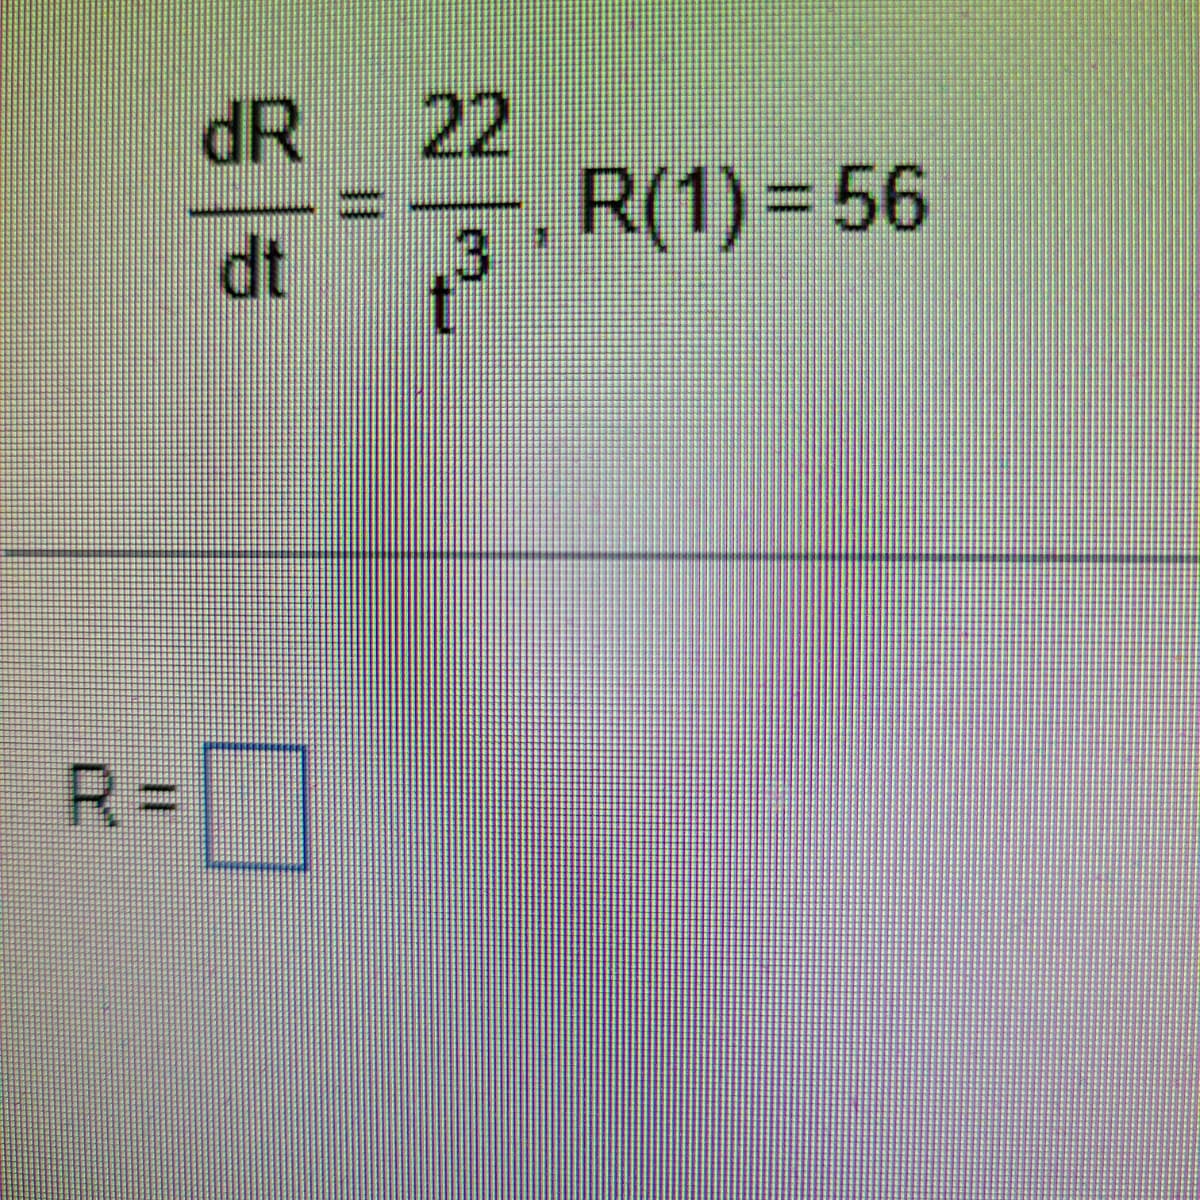 dR
dt
22
+³
R(1) = 56